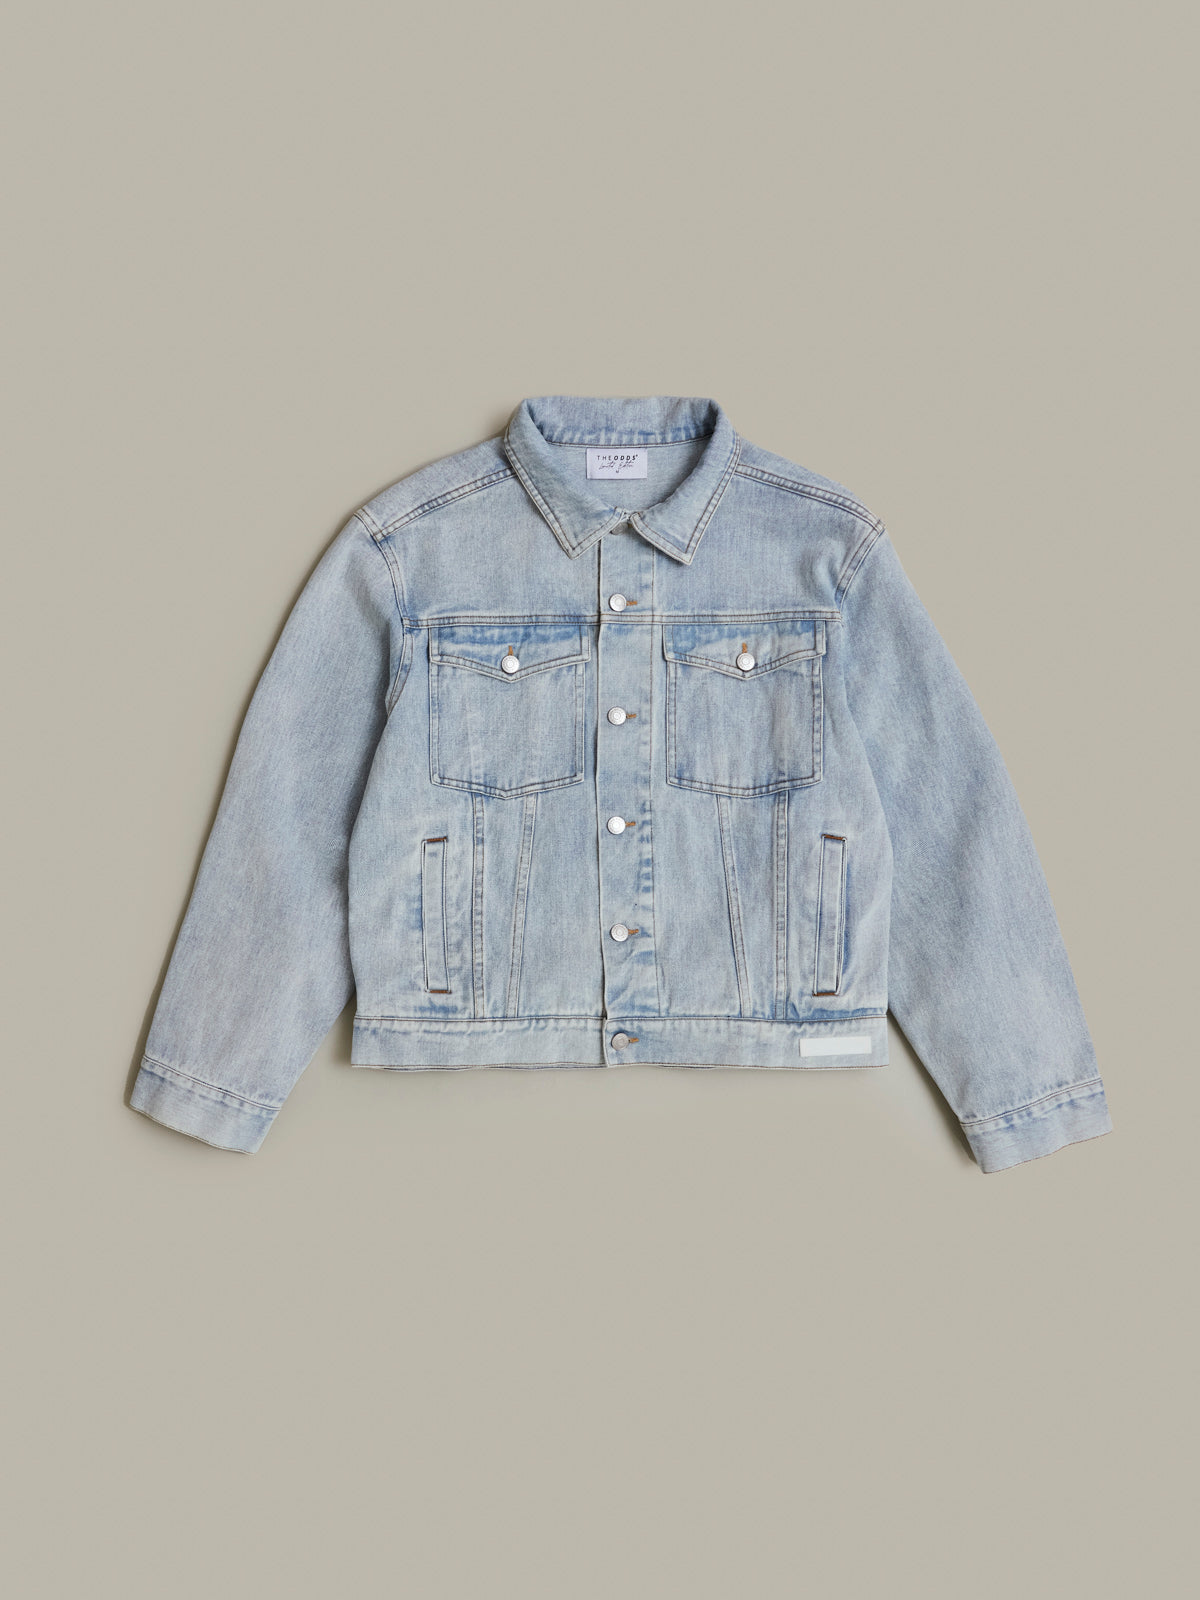 grænseflade damper skal Alaska Blue Jeans jacket/ LMTD edition – weartheodds